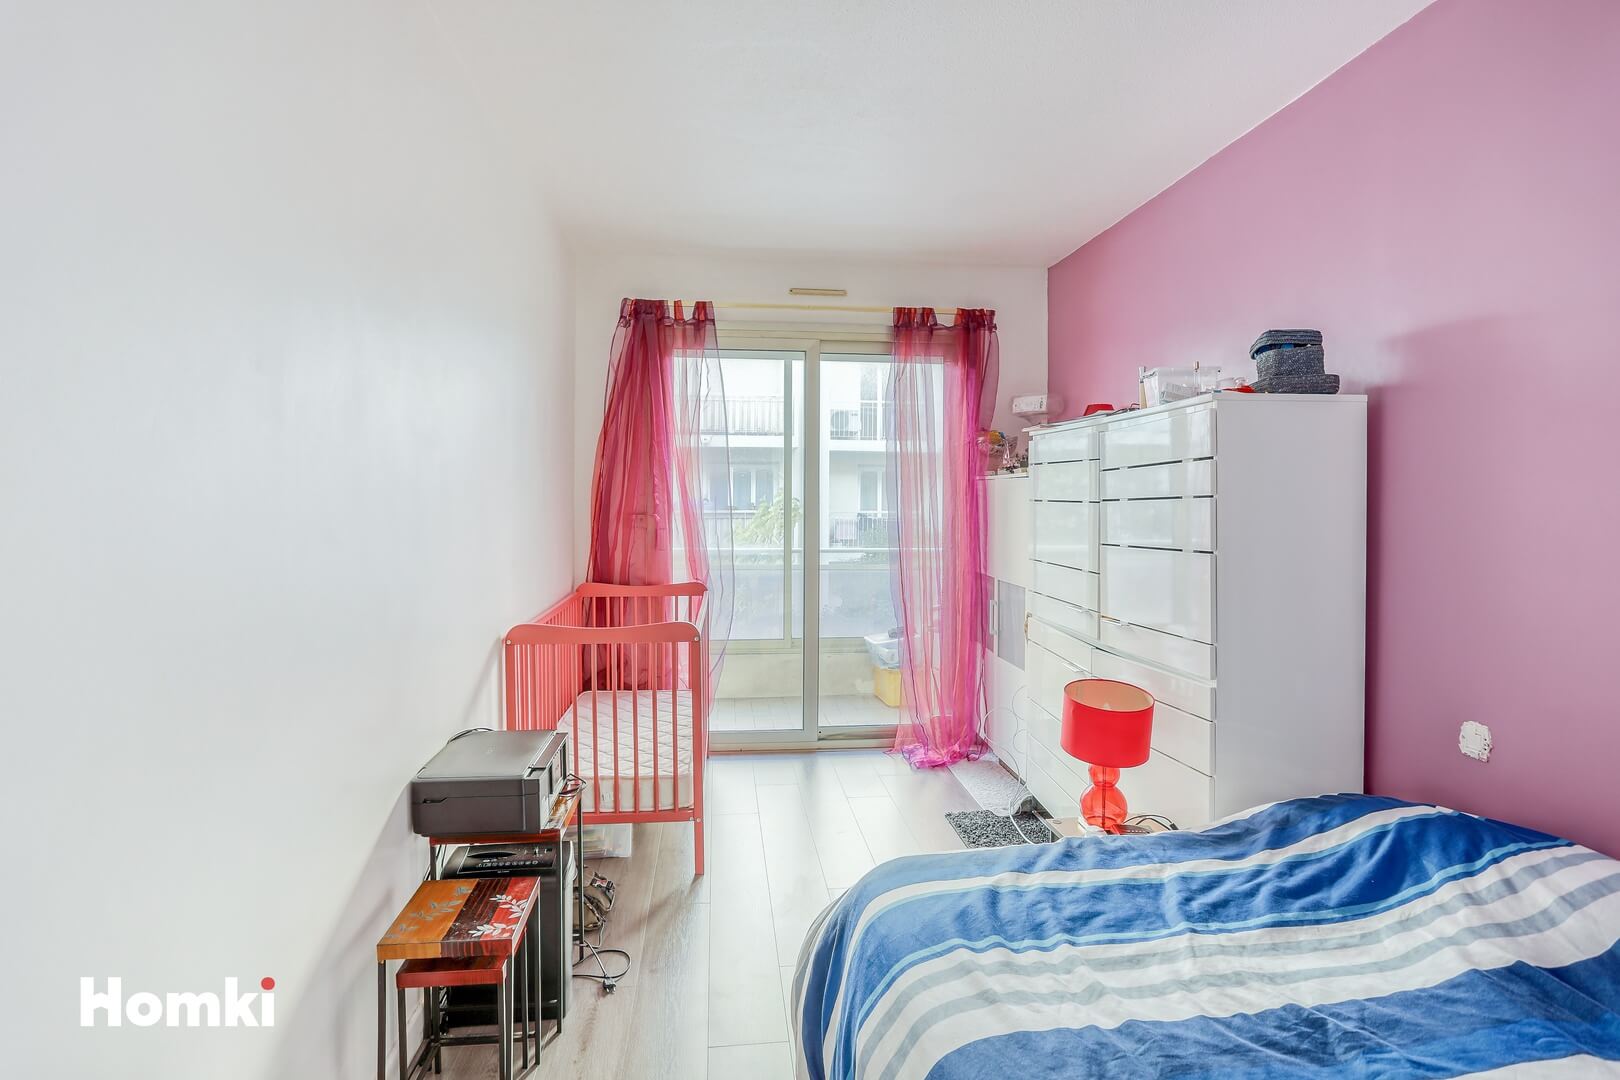 Homki - Vente Appartement  de 63.0 m² à Saint-Laurent-du-Var 06700